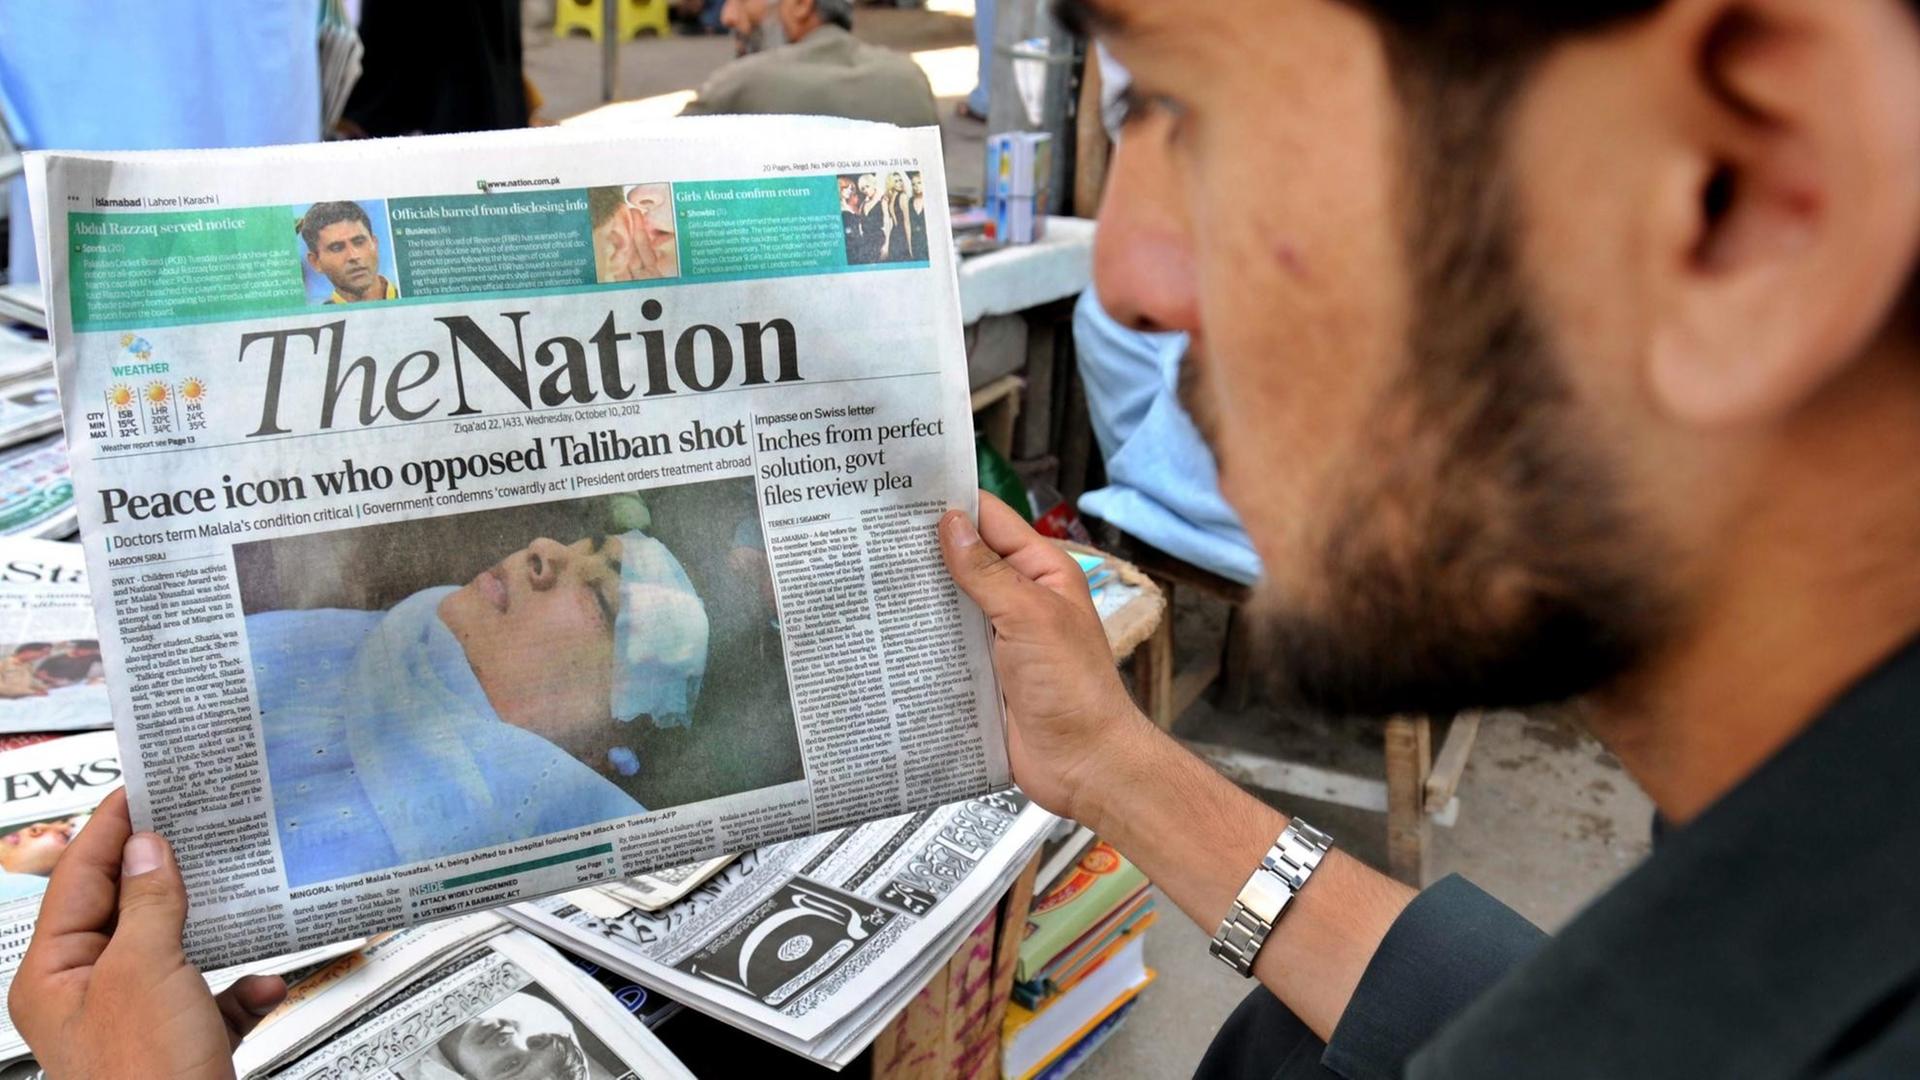 Ein Mann hat eine Ausgabe der englischsprachigen Tageszeitung "The Nation" in der Hand, die in Pakistan erscheint.